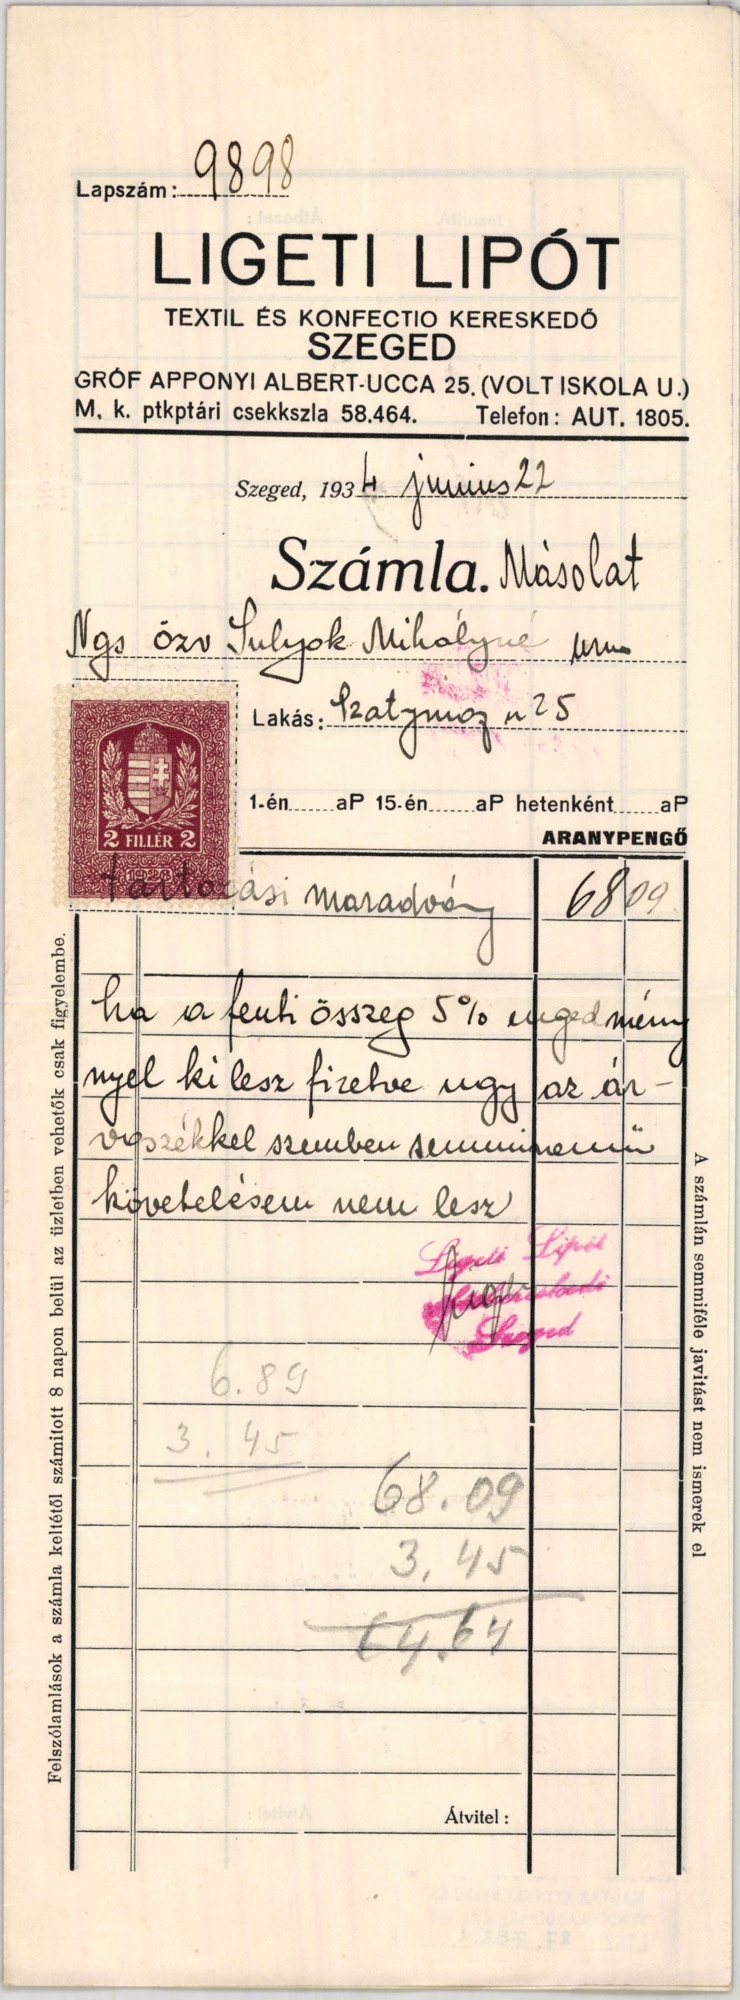 Ligeti Lipót rőfös kereskedő (Magyar Kereskedelmi és Vendéglátóipari Múzeum CC BY-NC-SA)